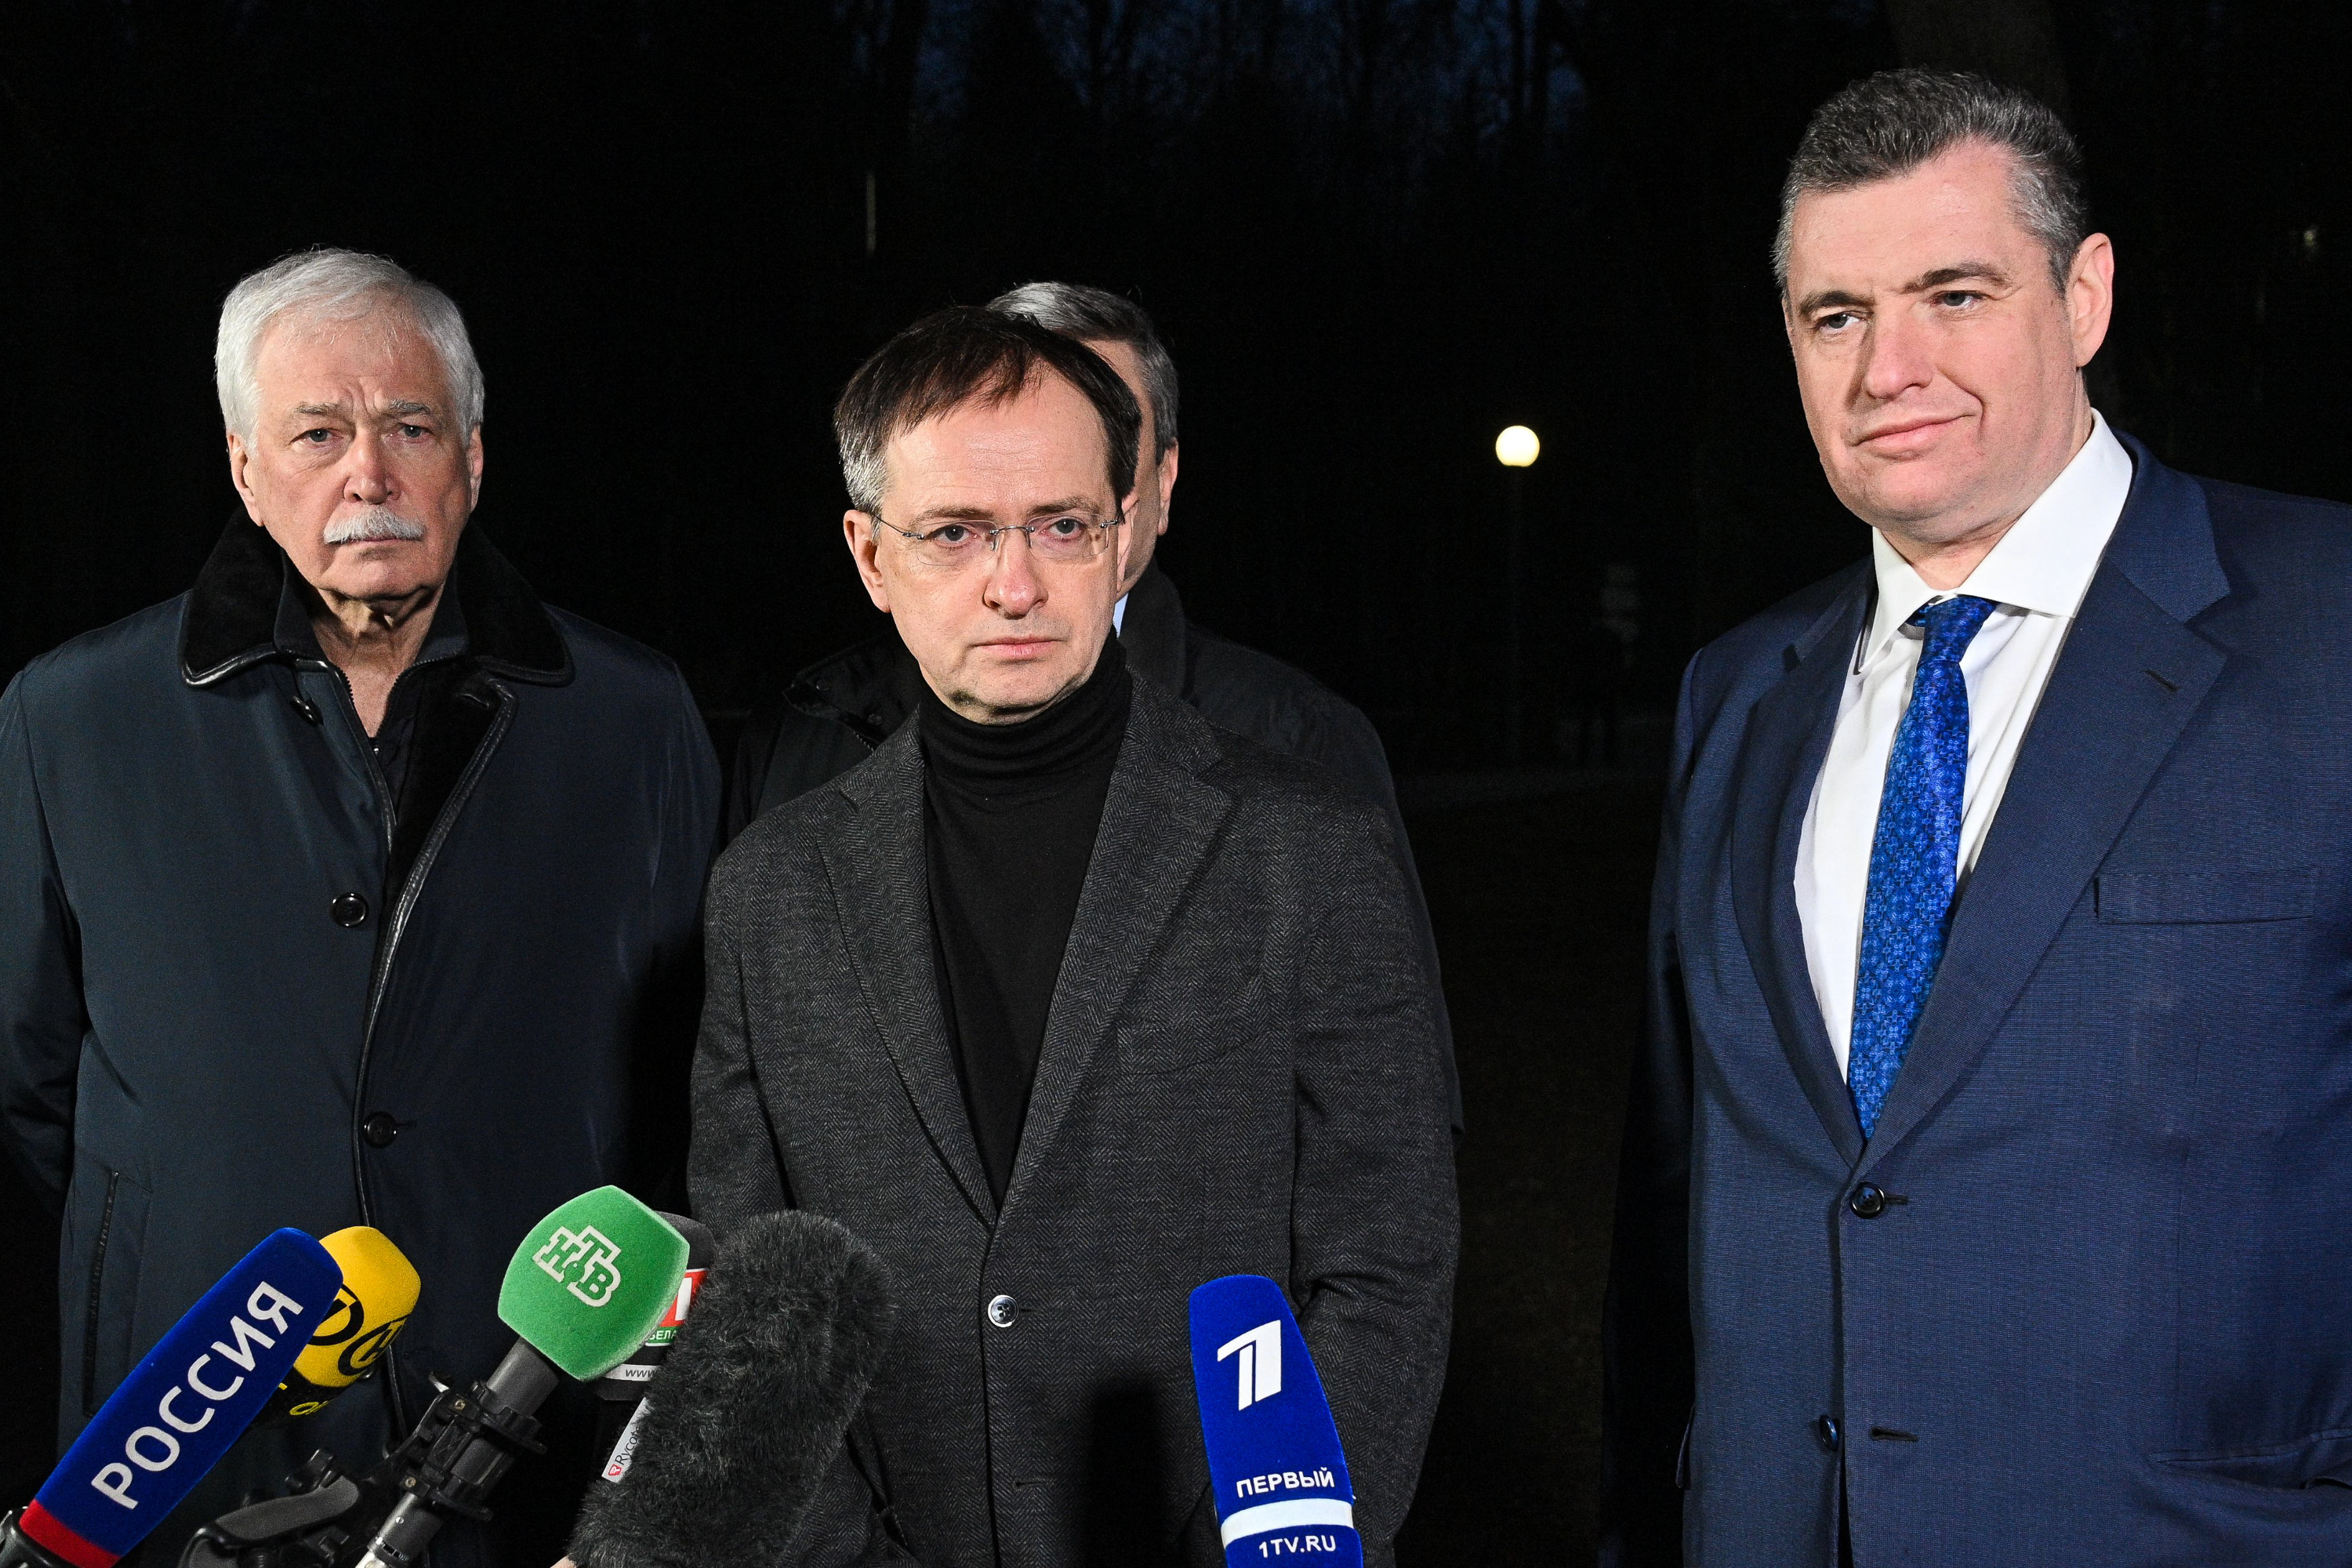 Борис Грызлов, Владимир Мединский, Леонид Слуцкий перед началом второго раунда переговоров